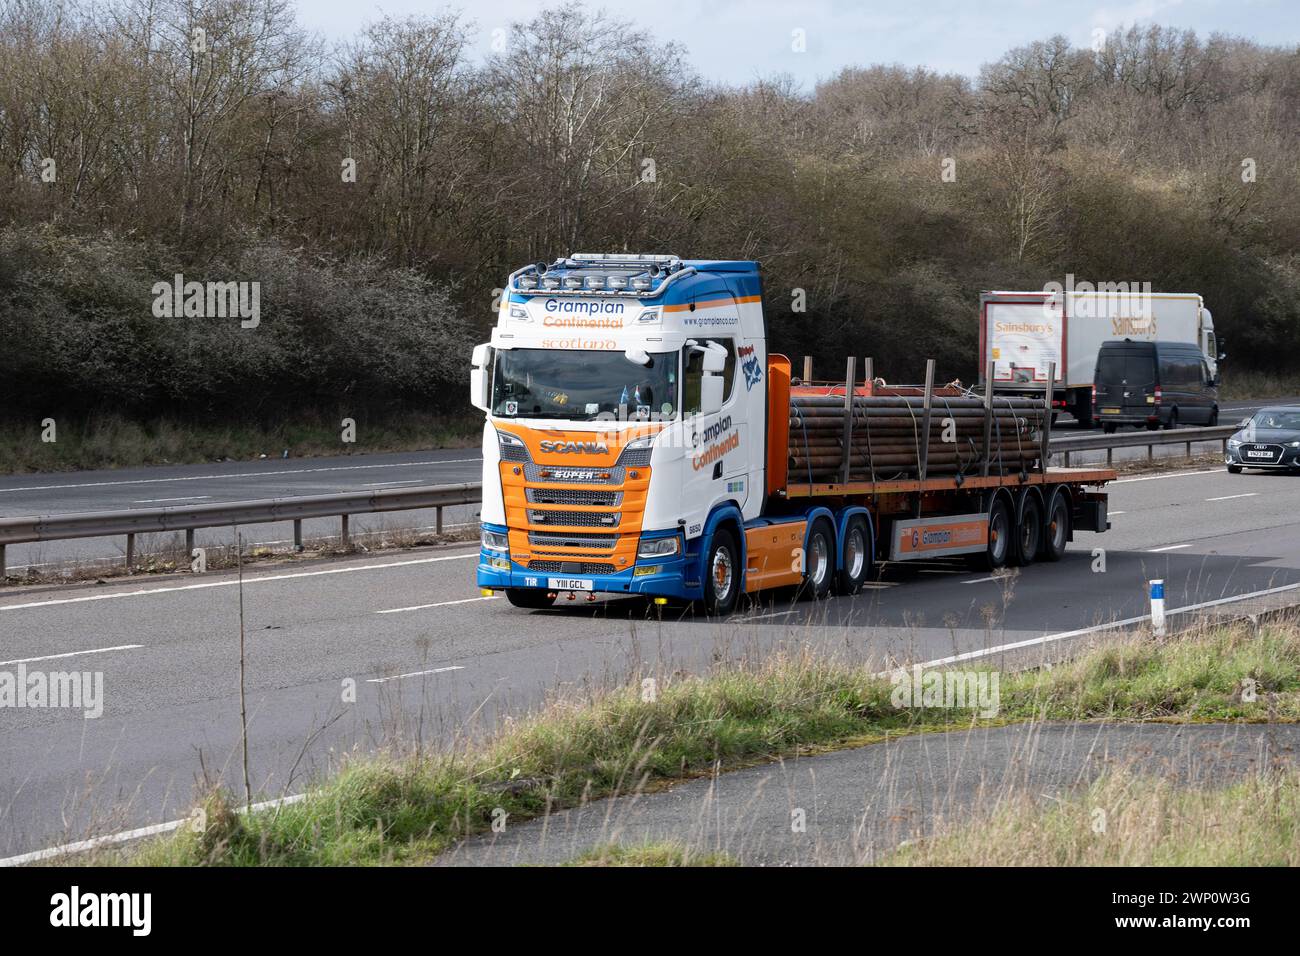 Camion Grampian Continental sull'autostrada M40, Warwickshire, Regno Unito Foto Stock